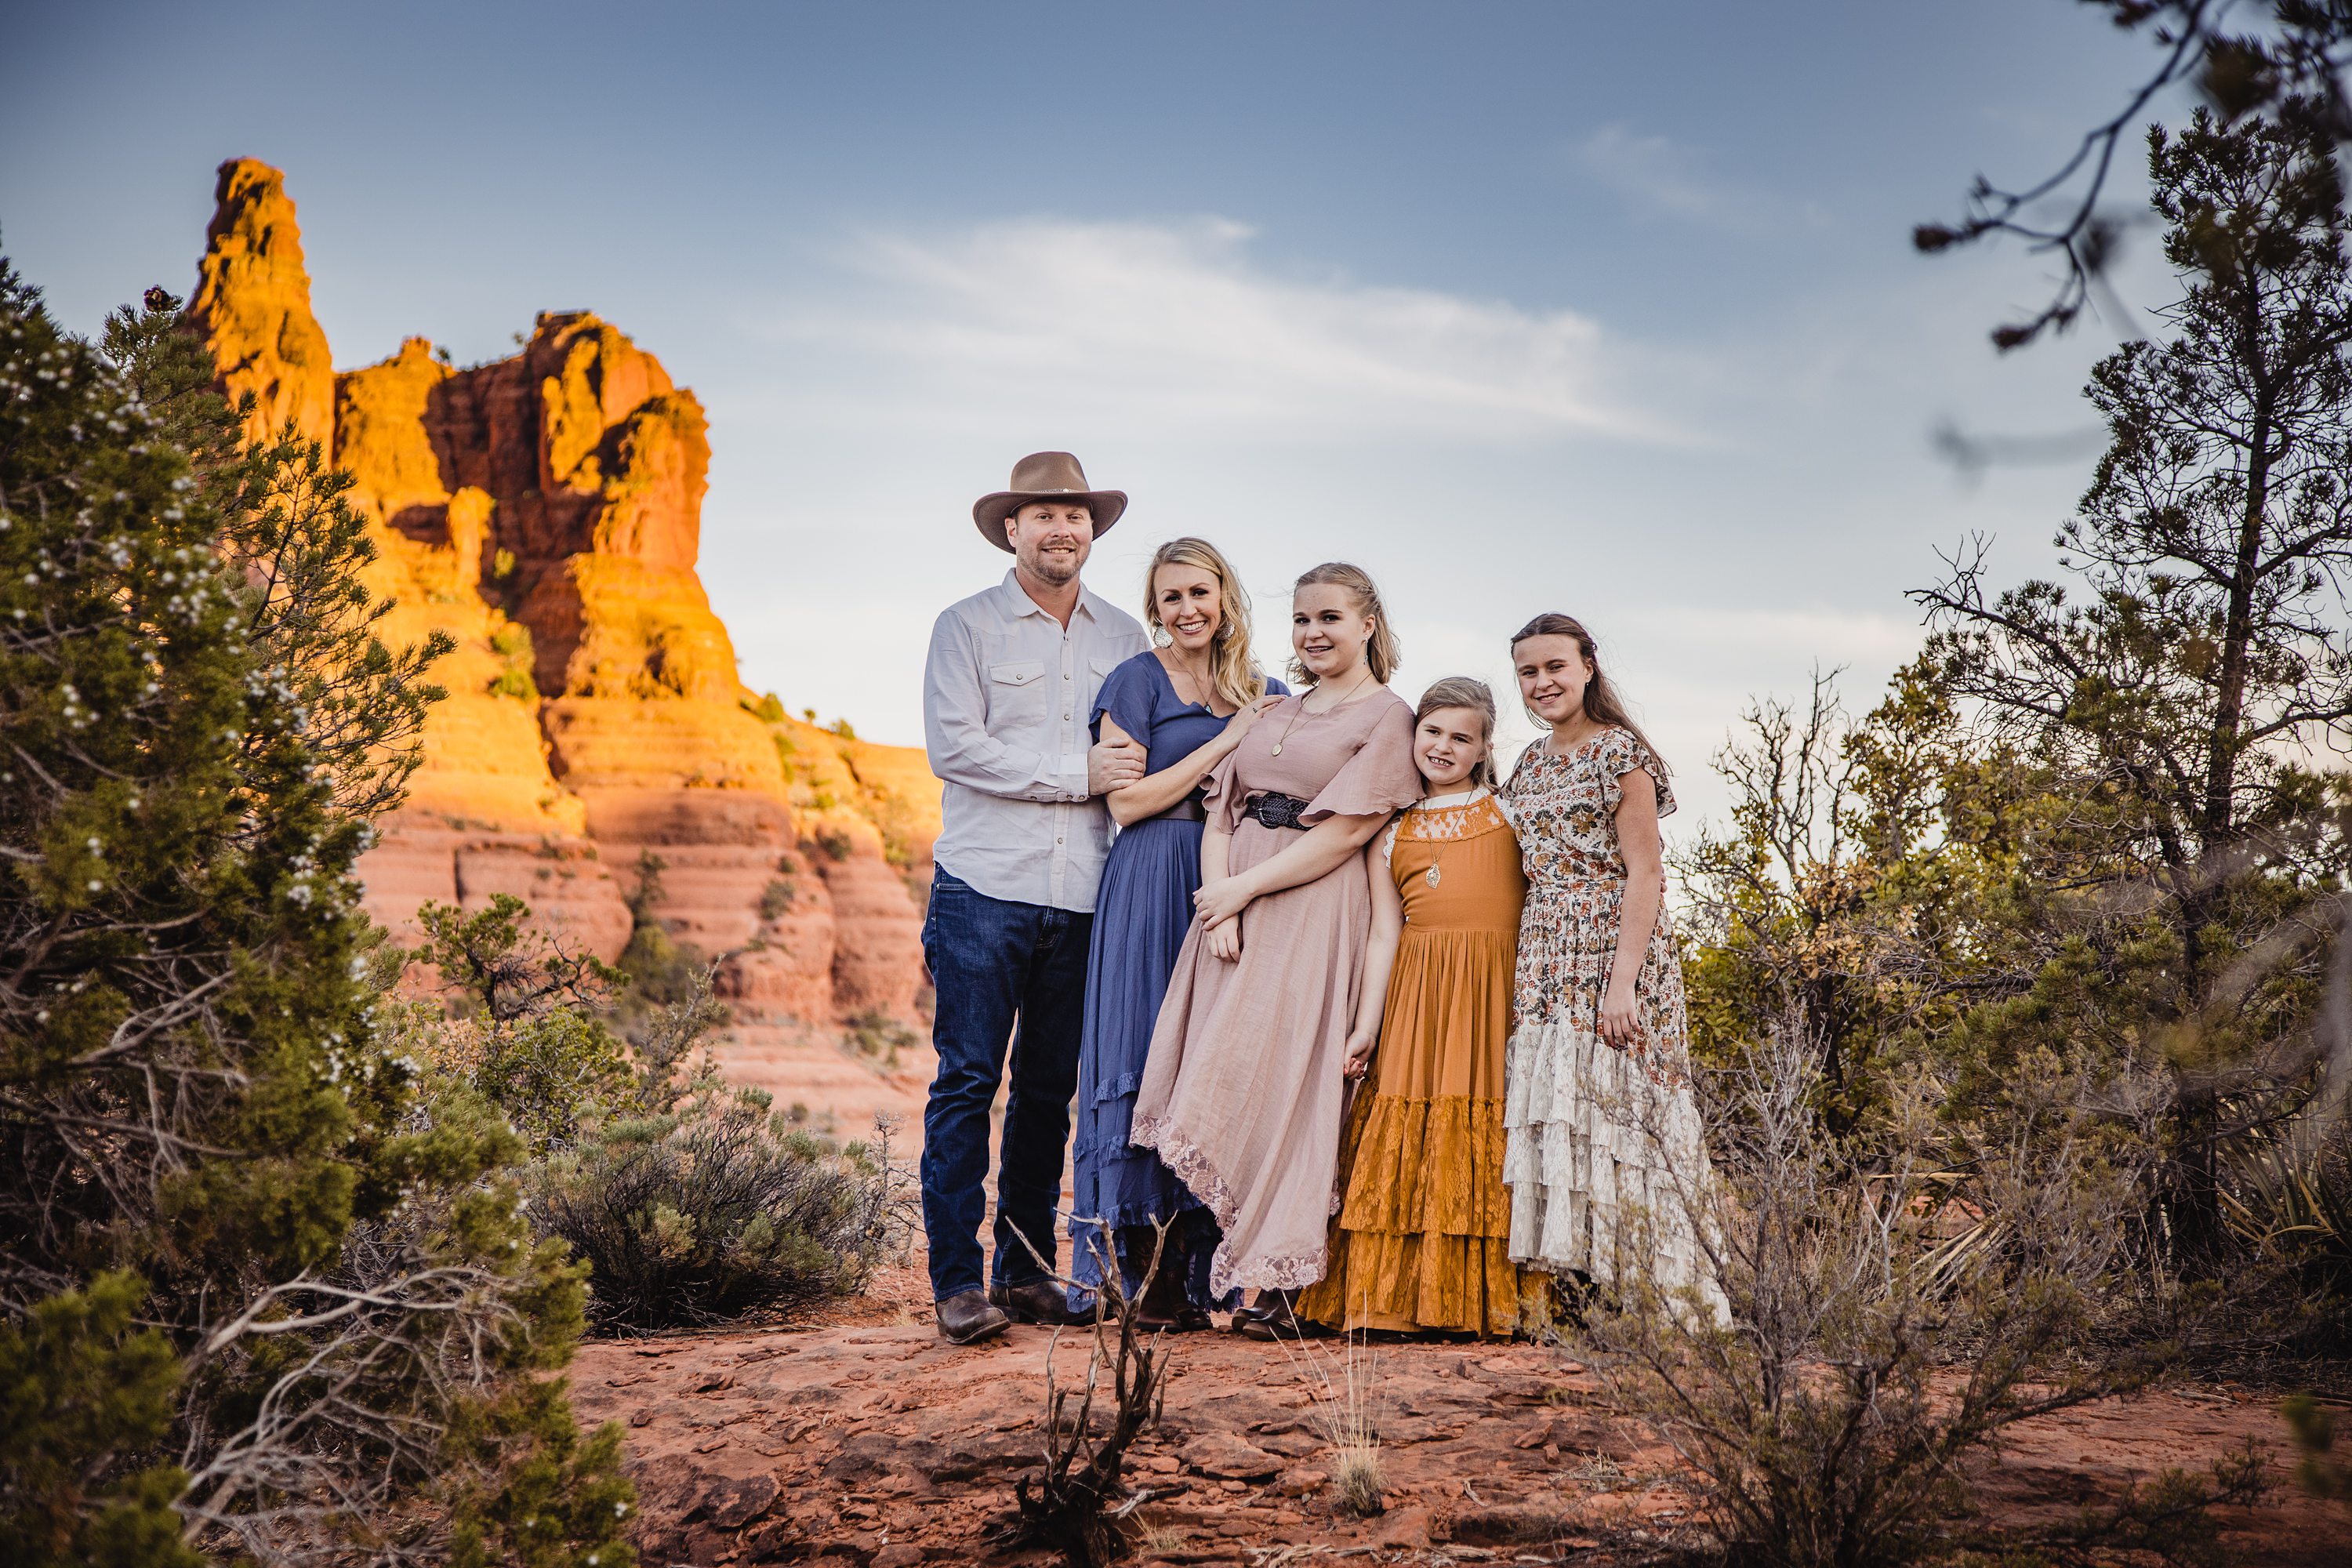 Red Rock sedona Family Photography,Arizona Family Photography in Sedona